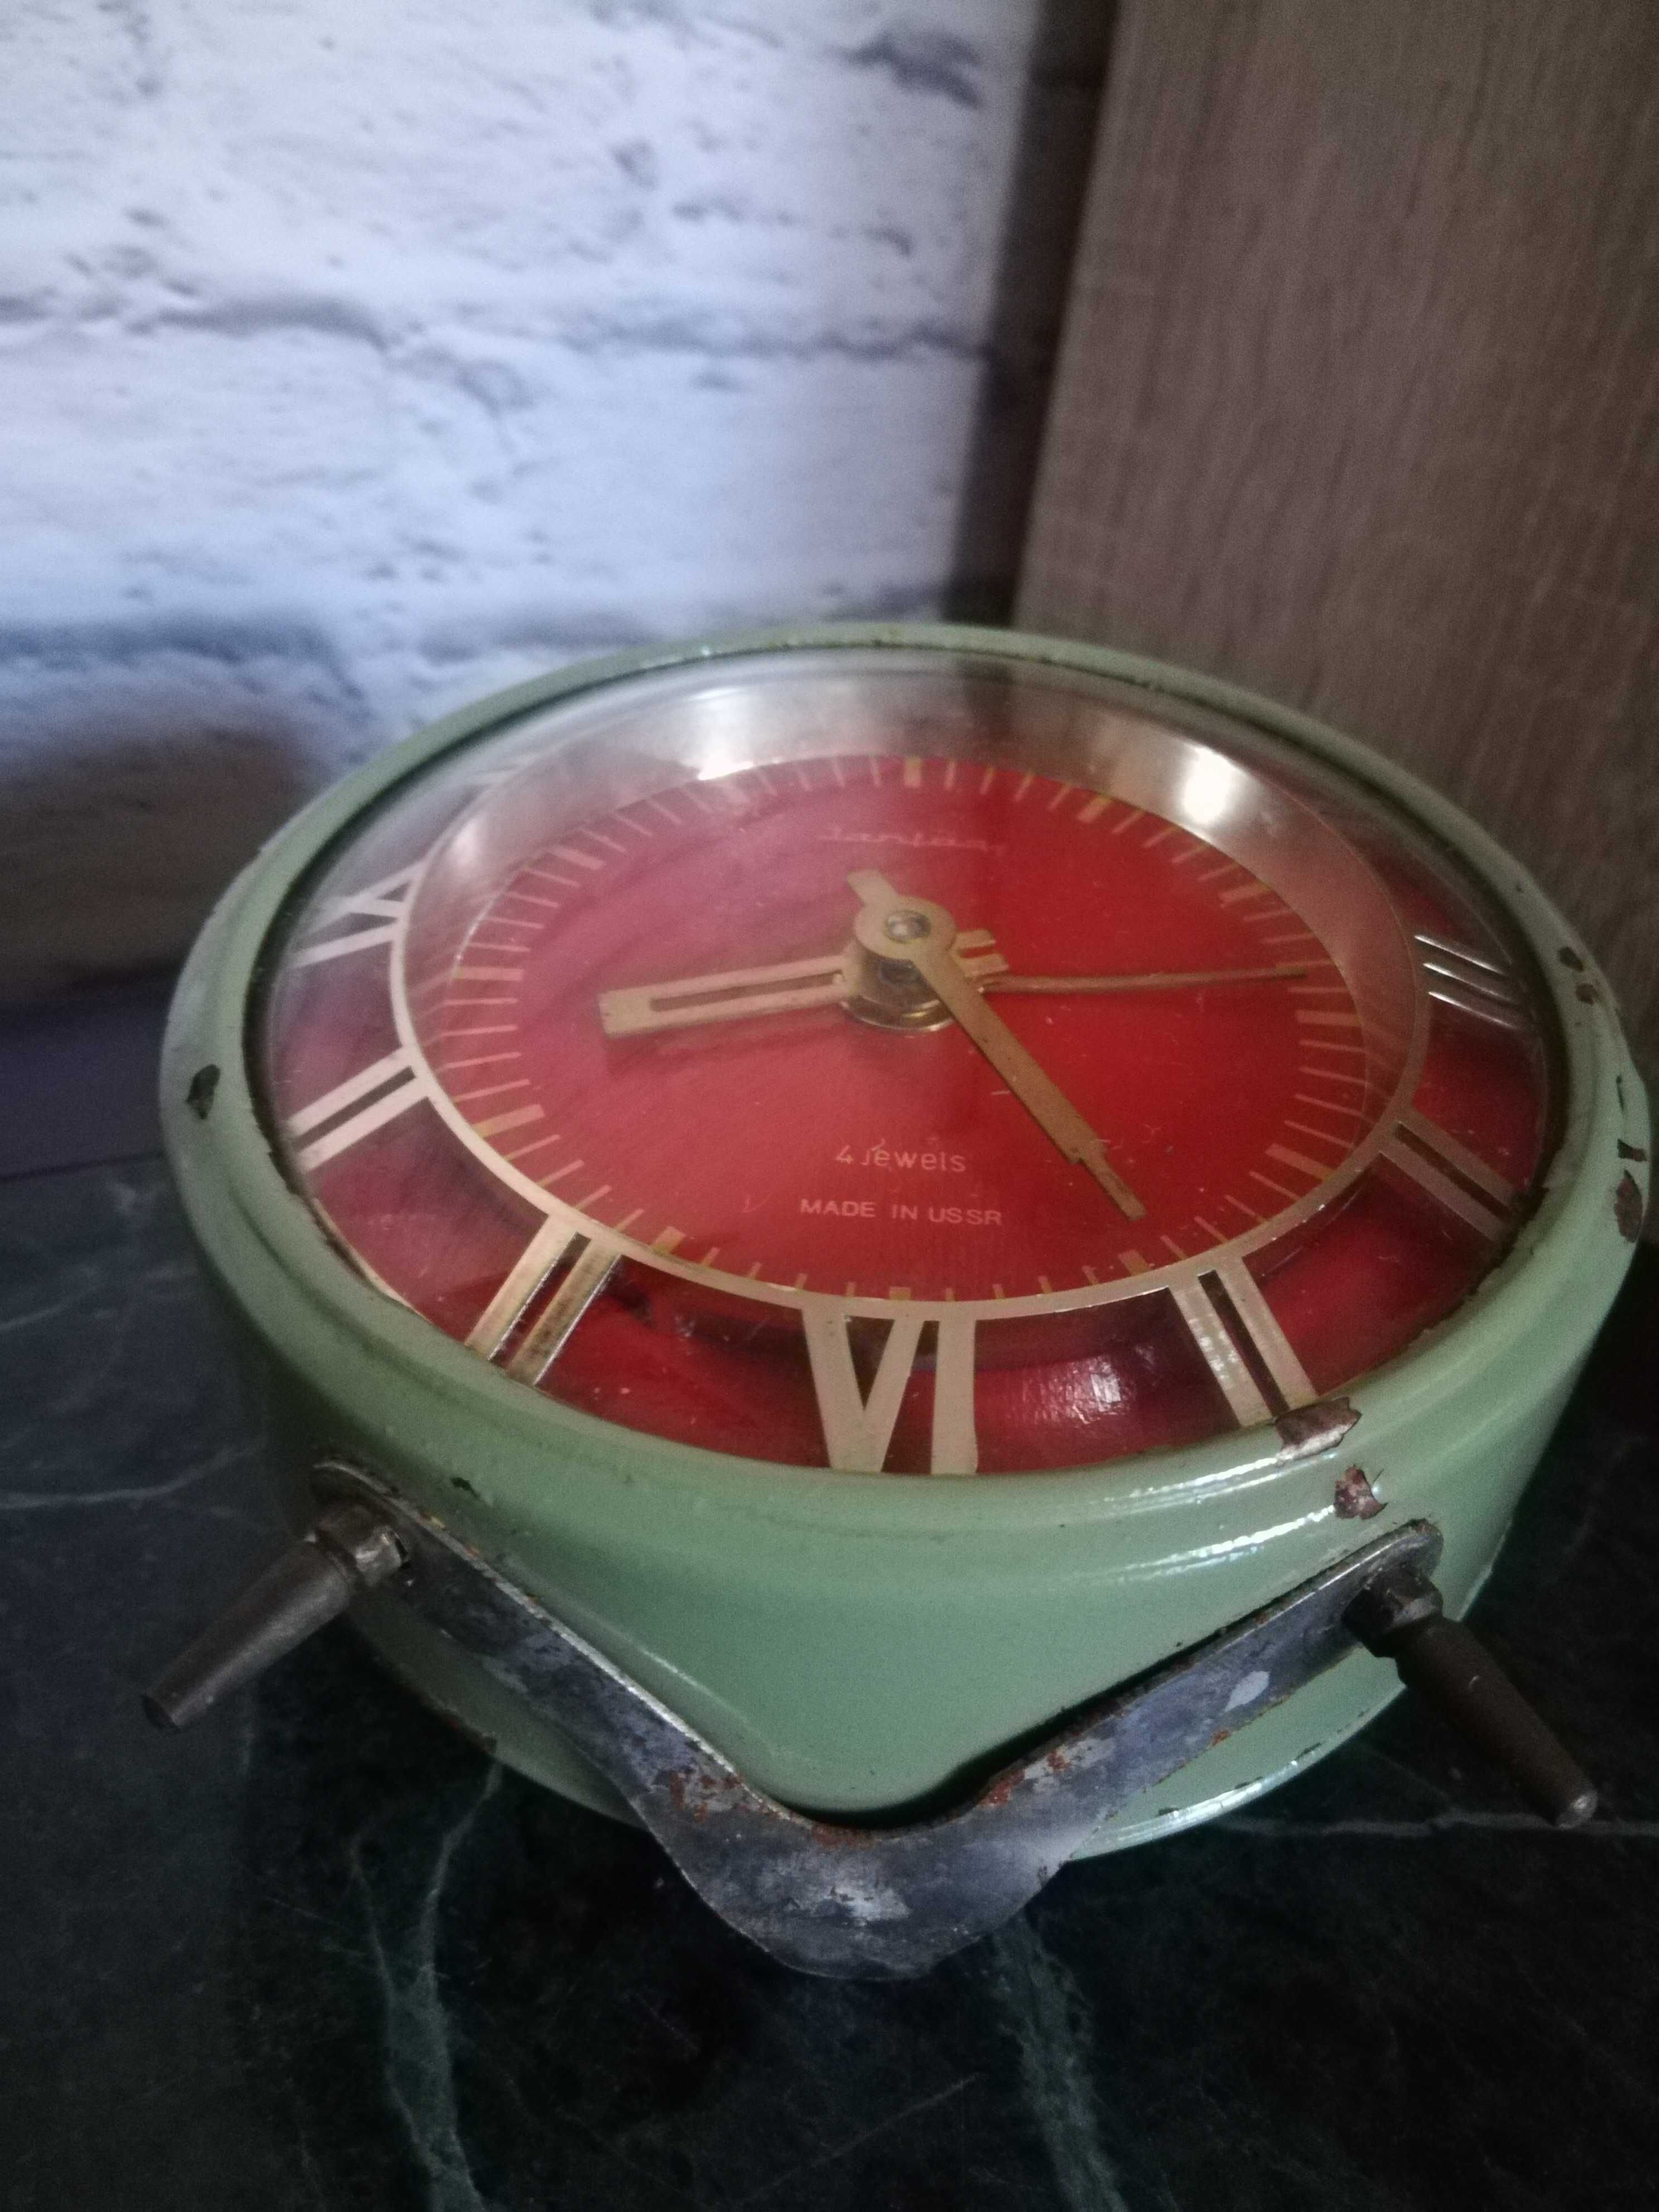 Часы - будильник Янтарь, USSR.